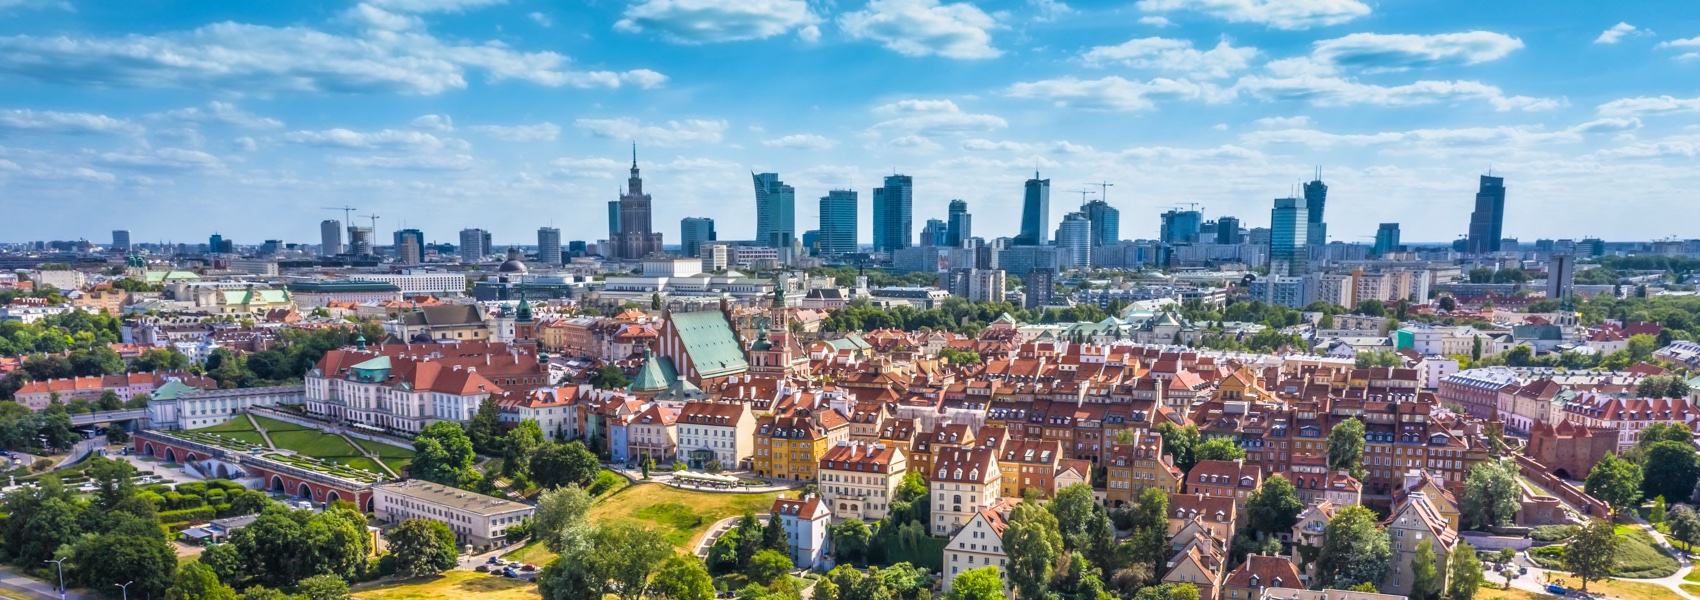 Panorama de Varsovie